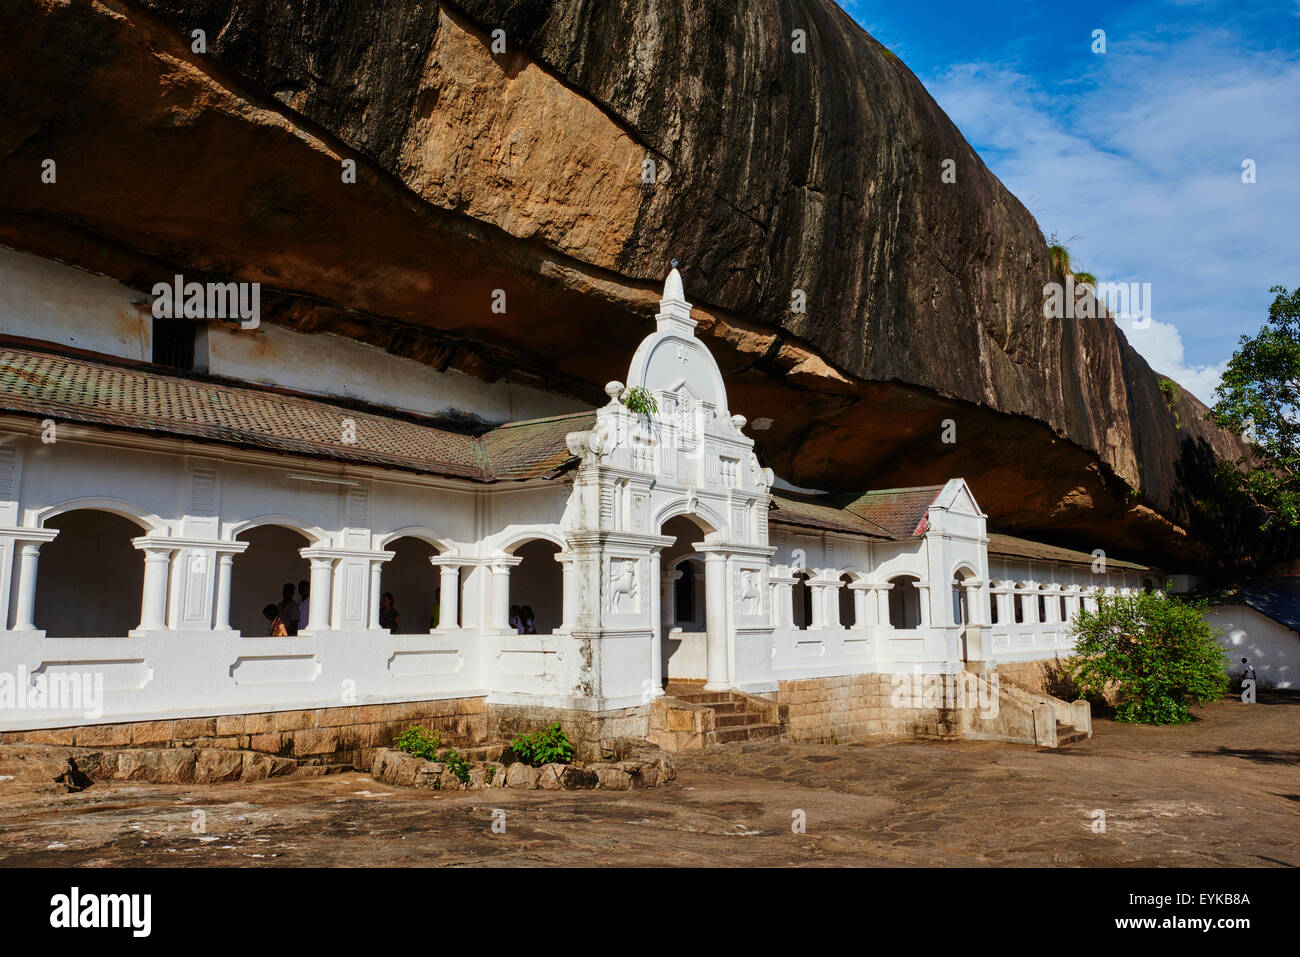 Sri Lanka, Ceylon, North Central Province, Dambulla, Buddhist Cave Temple, UNESCO World Heritage Site Stock Photo